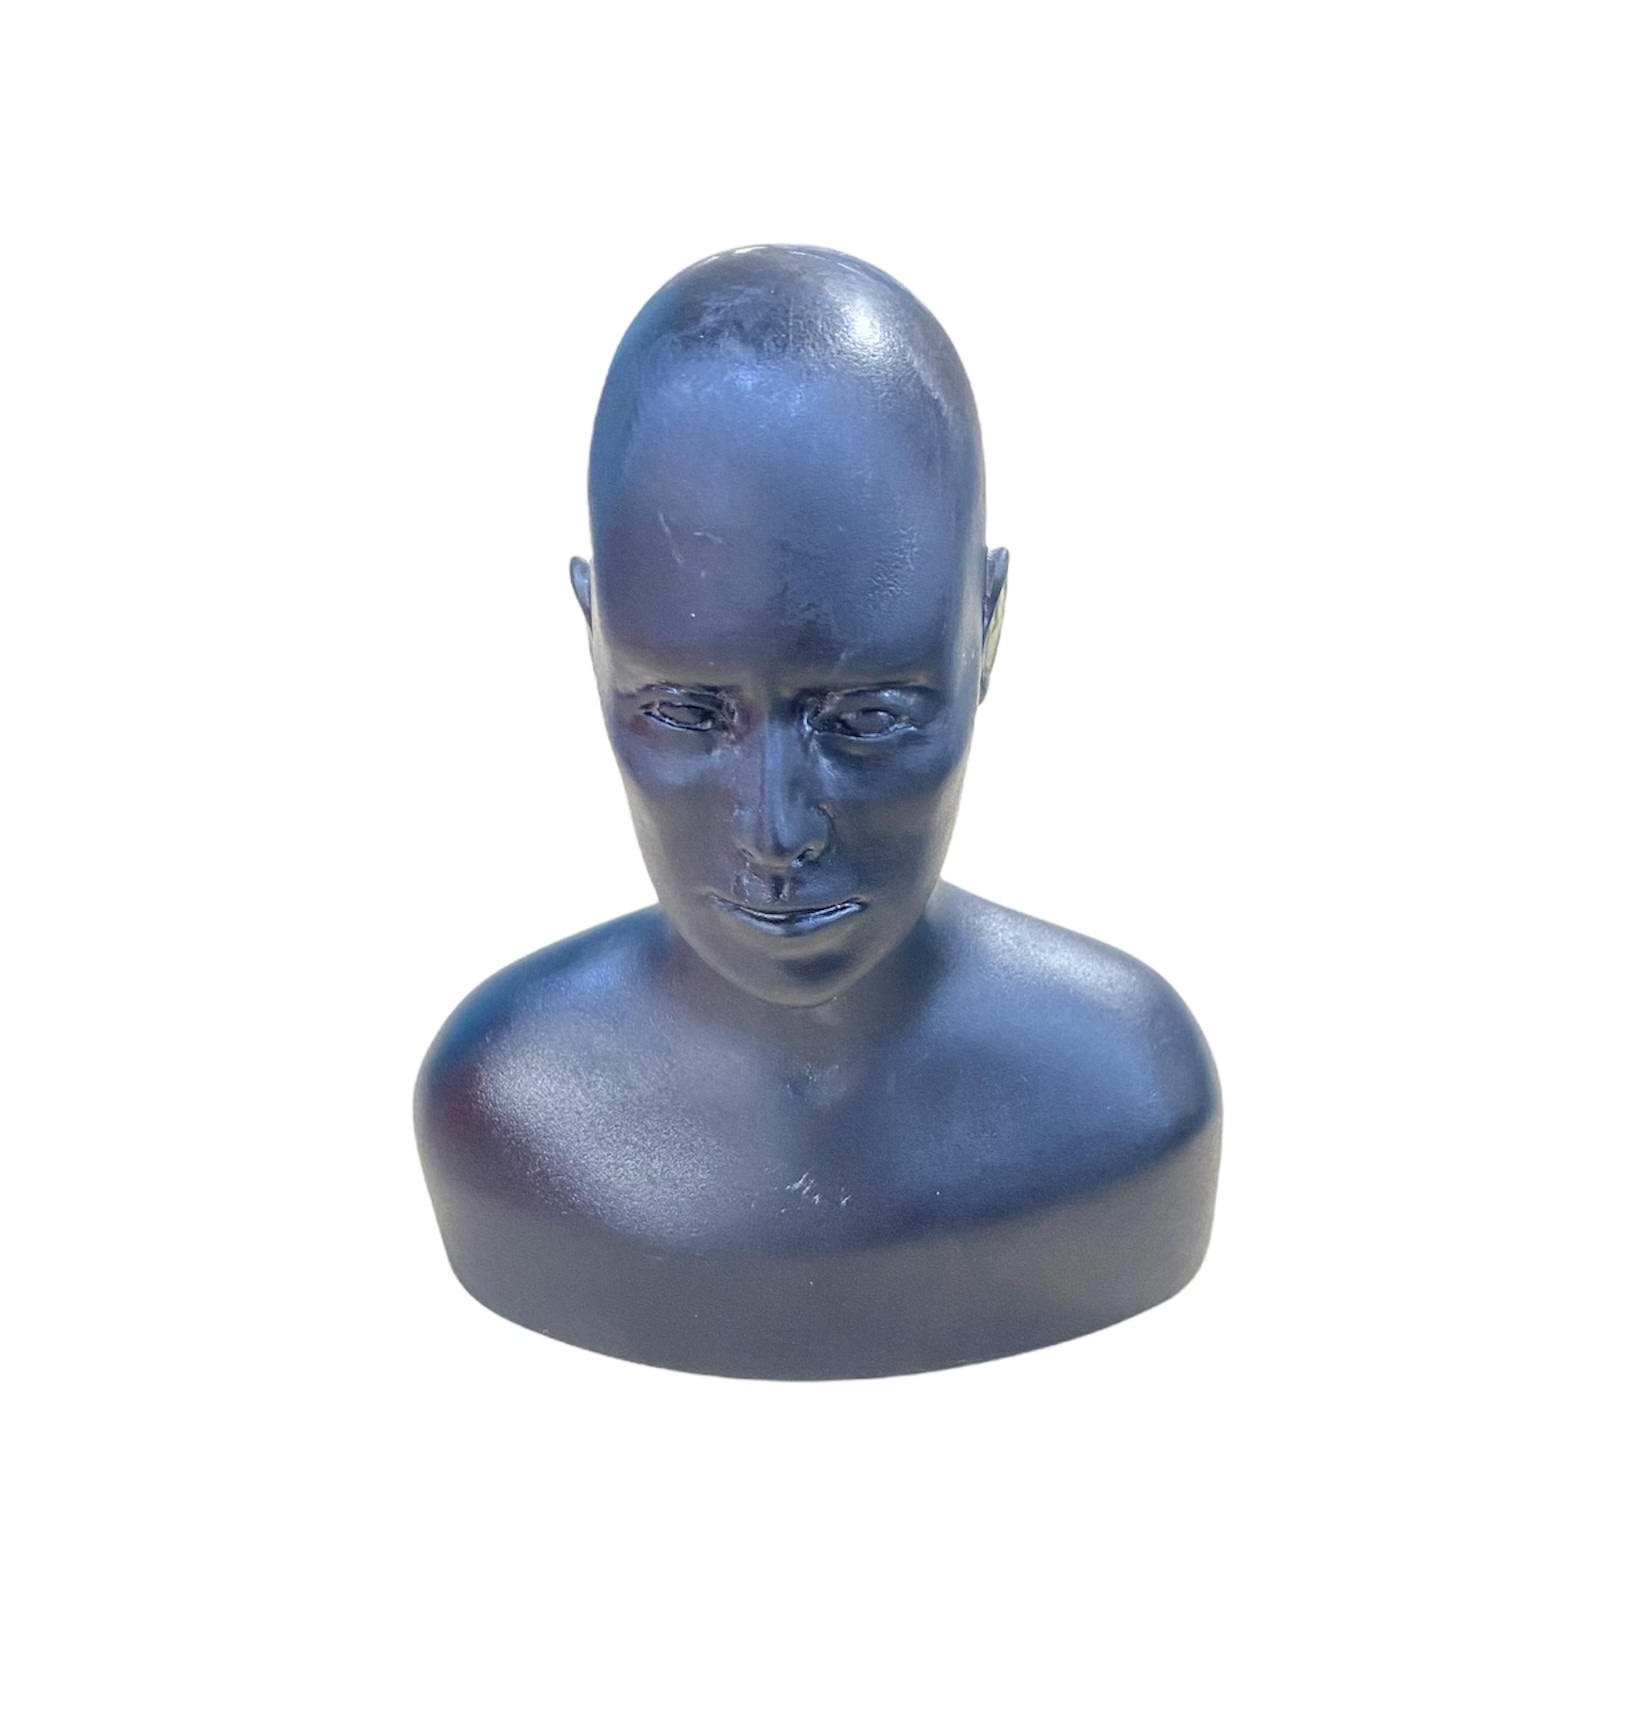 https://cdn.shoplightspeed.com/shops/606431/files/42167327/just-sculpt-david-maquette-head-bust-quarter-scale.jpg